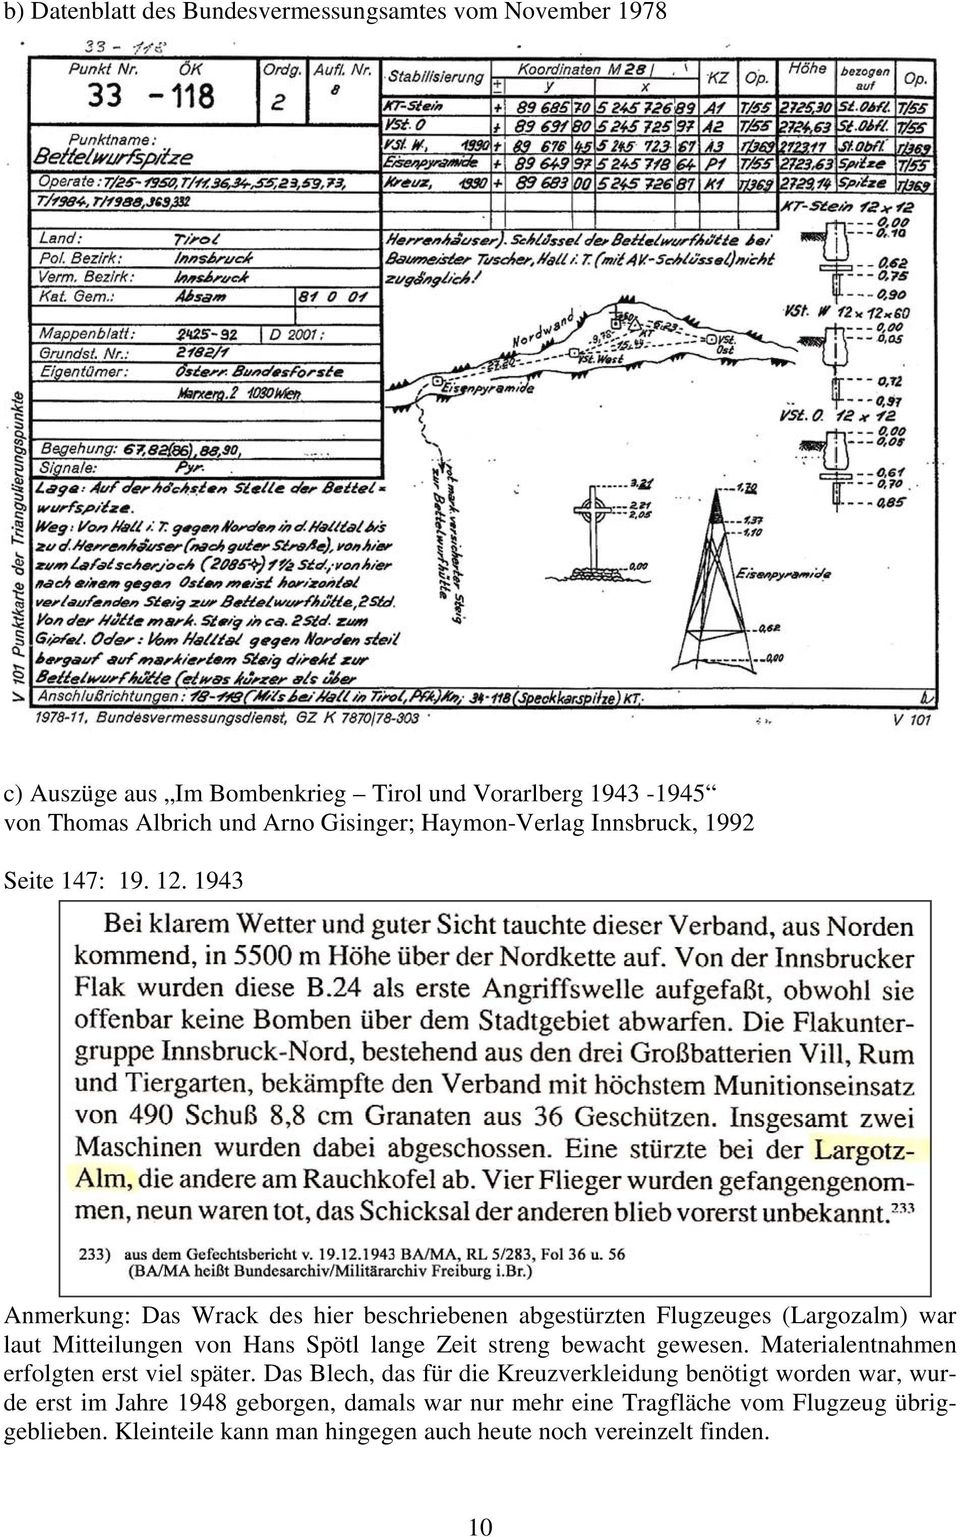 1943 Anmerkung: Das Wrack des hier beschriebenen abgestürzten Flugzeuges (Largozalm) war laut Mitteilungen von Hans Spötl lange Zeit streng bewacht gewesen.